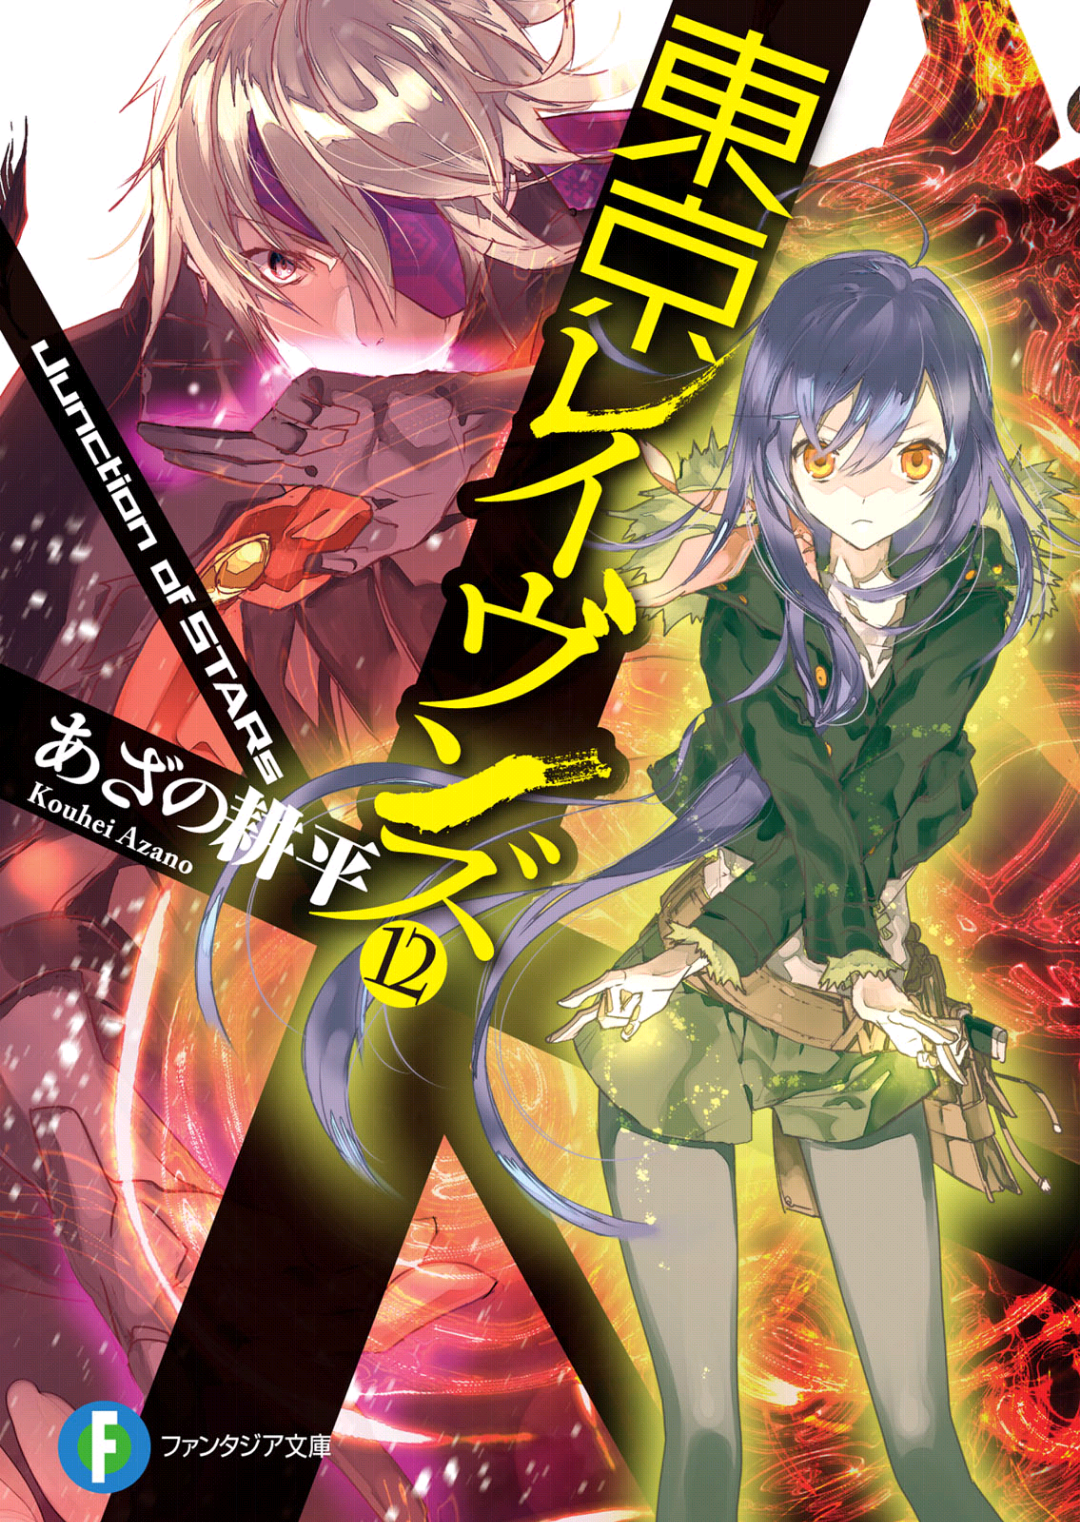 Tokyo Ravens Manga